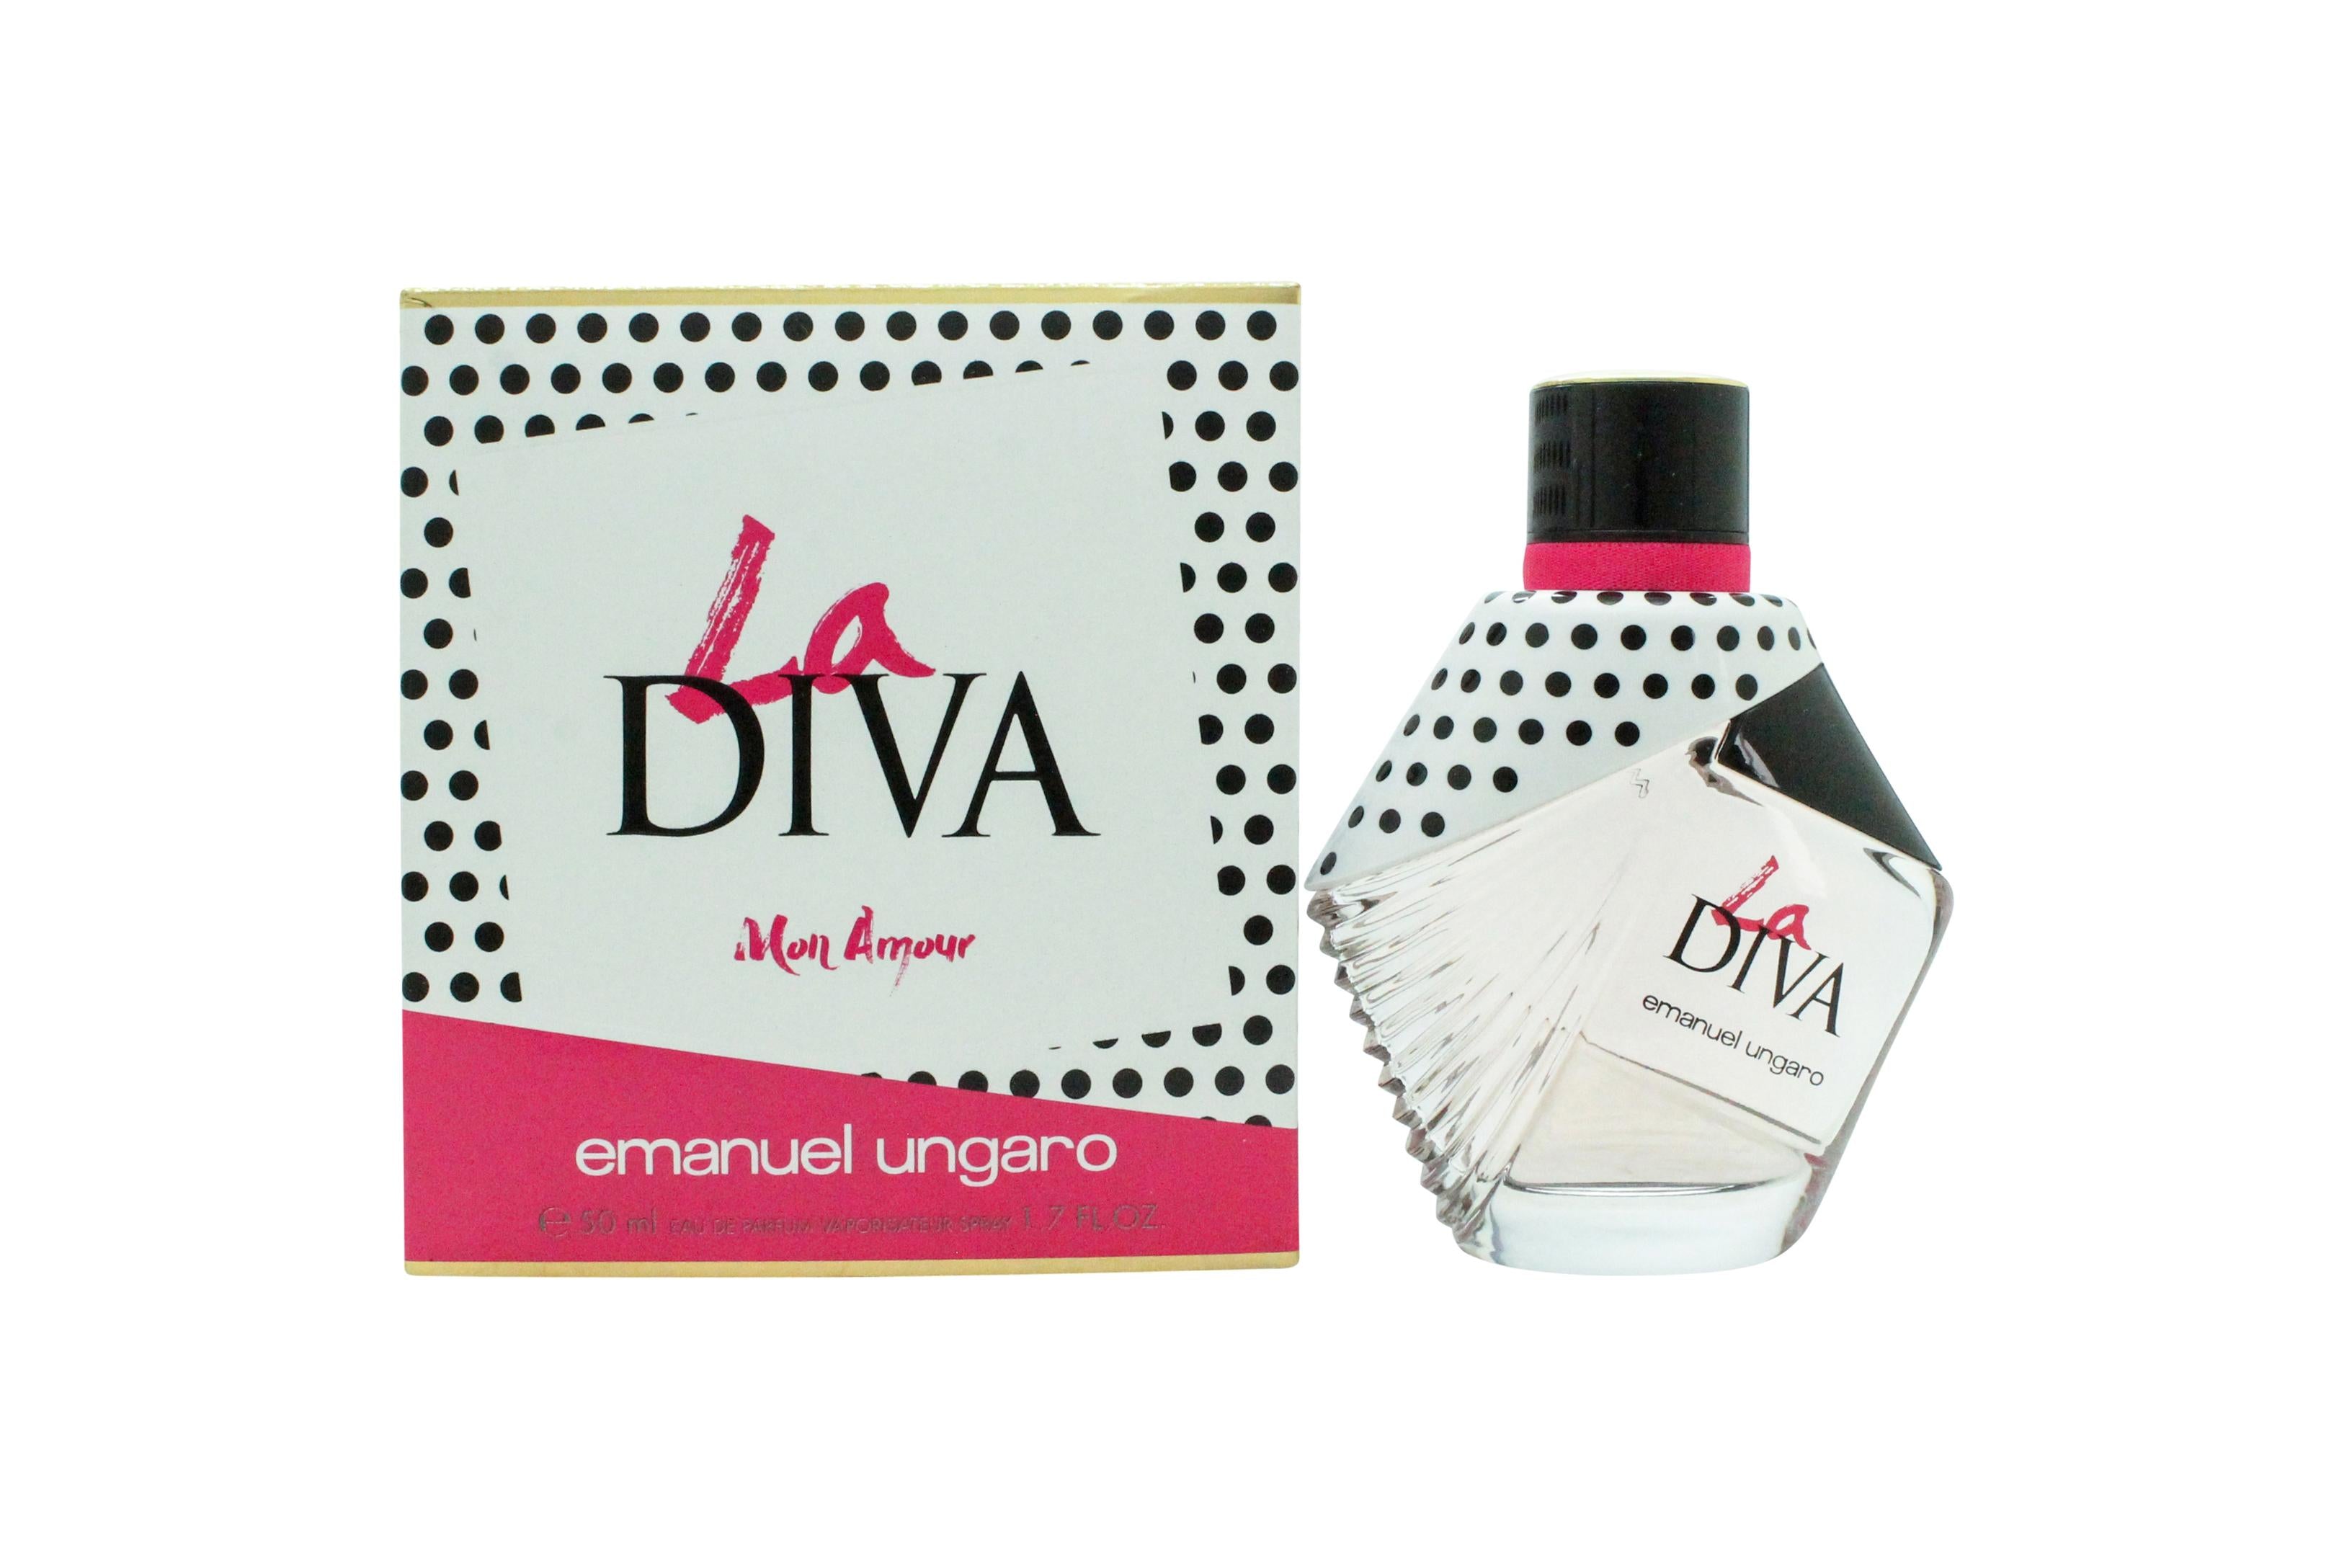 View Emanuel Ungaro La Diva Mon Amour Eau de Parfum 50ml Spray information